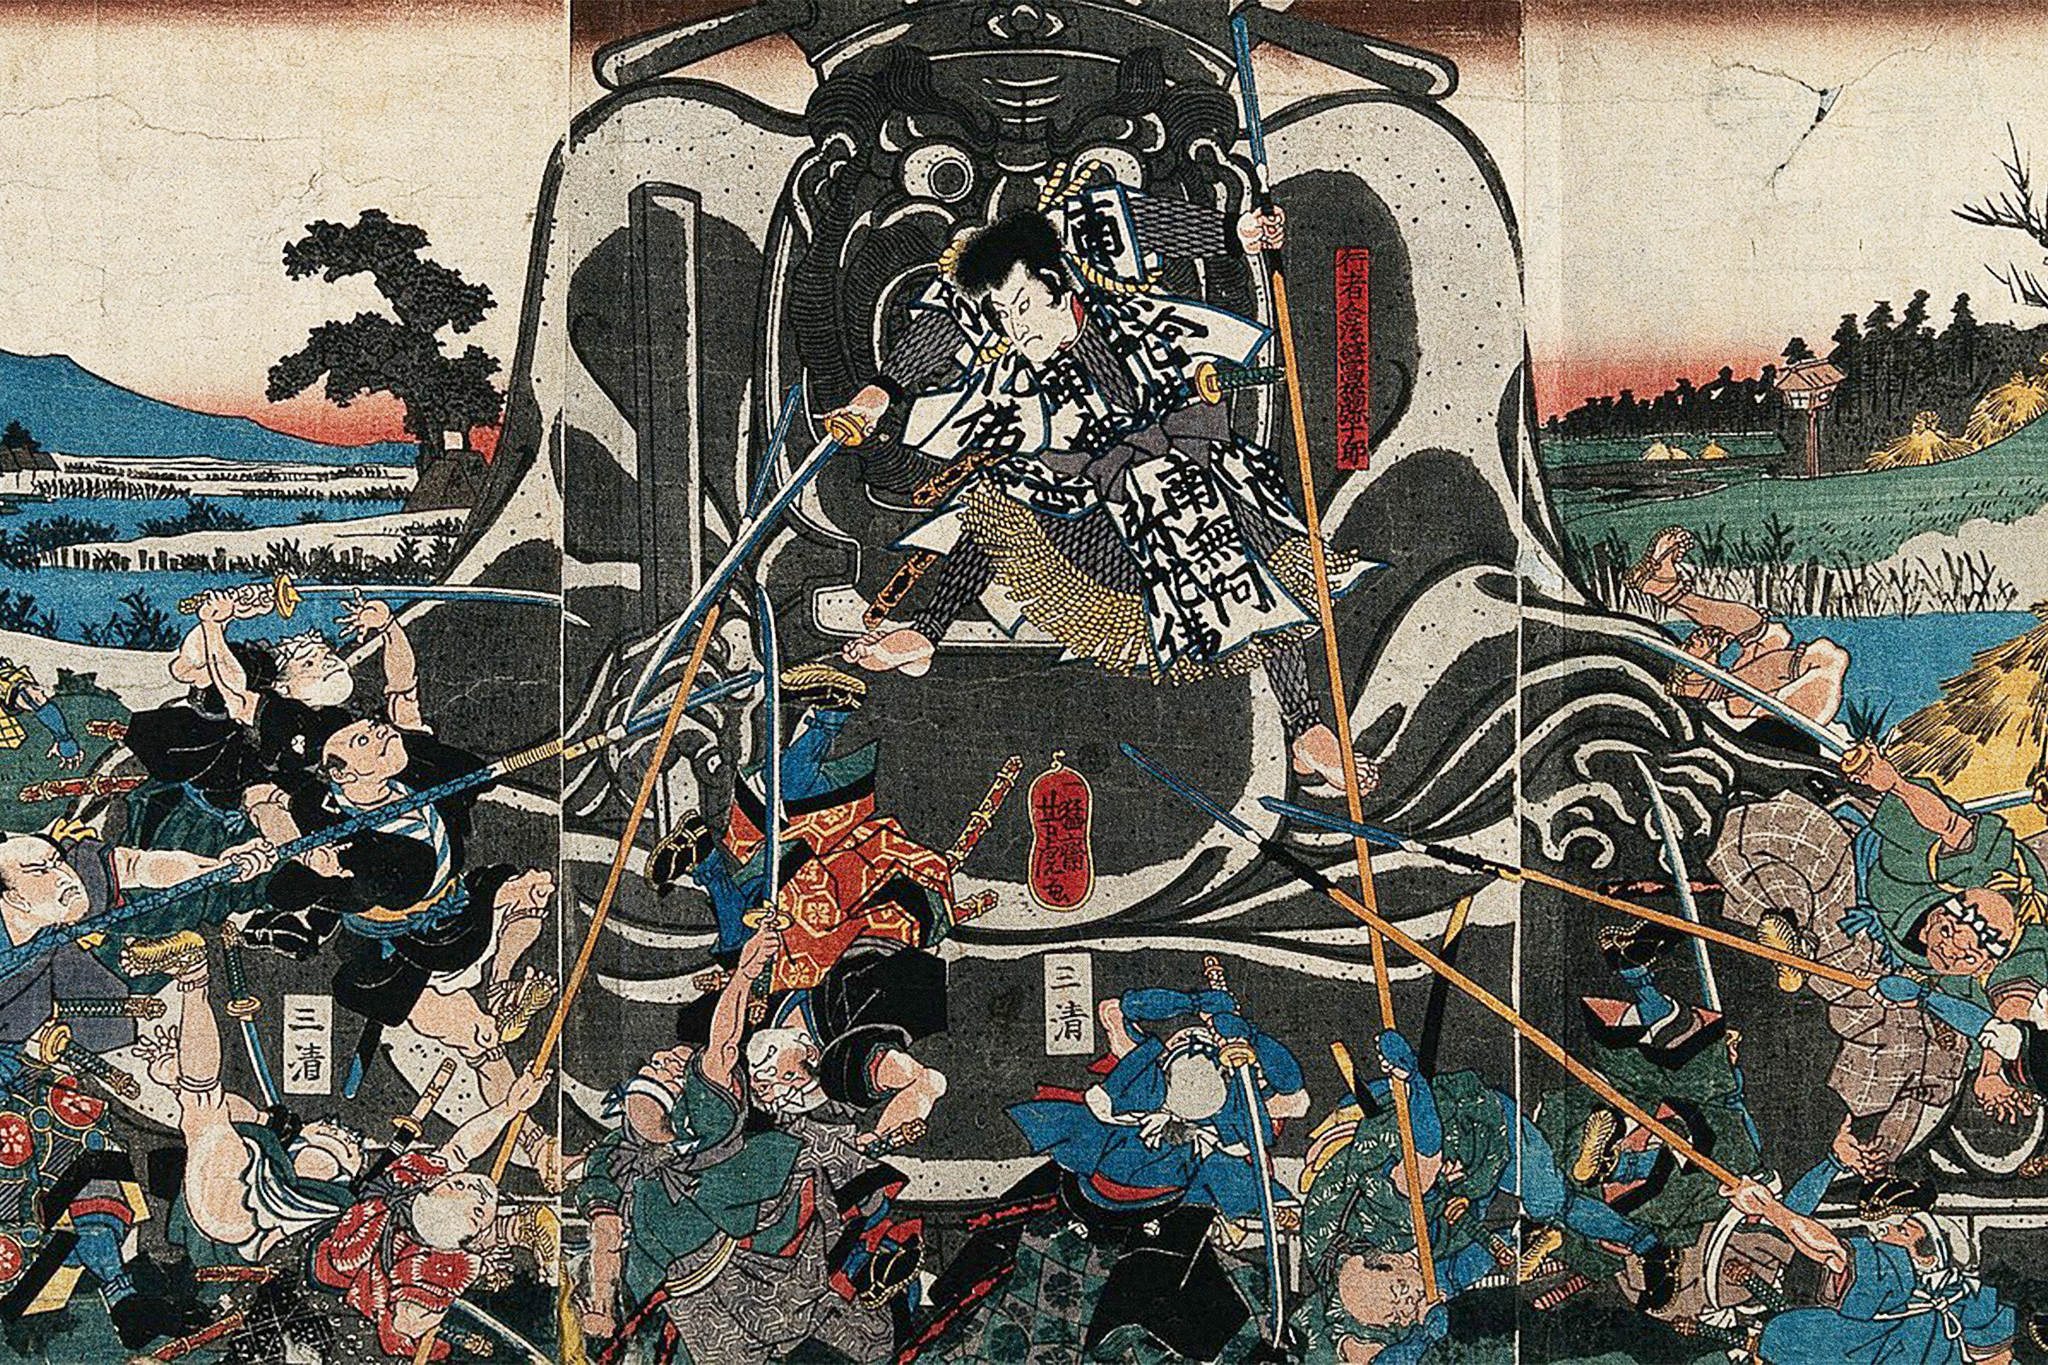 Afro Samurai - first battle (massacre) 